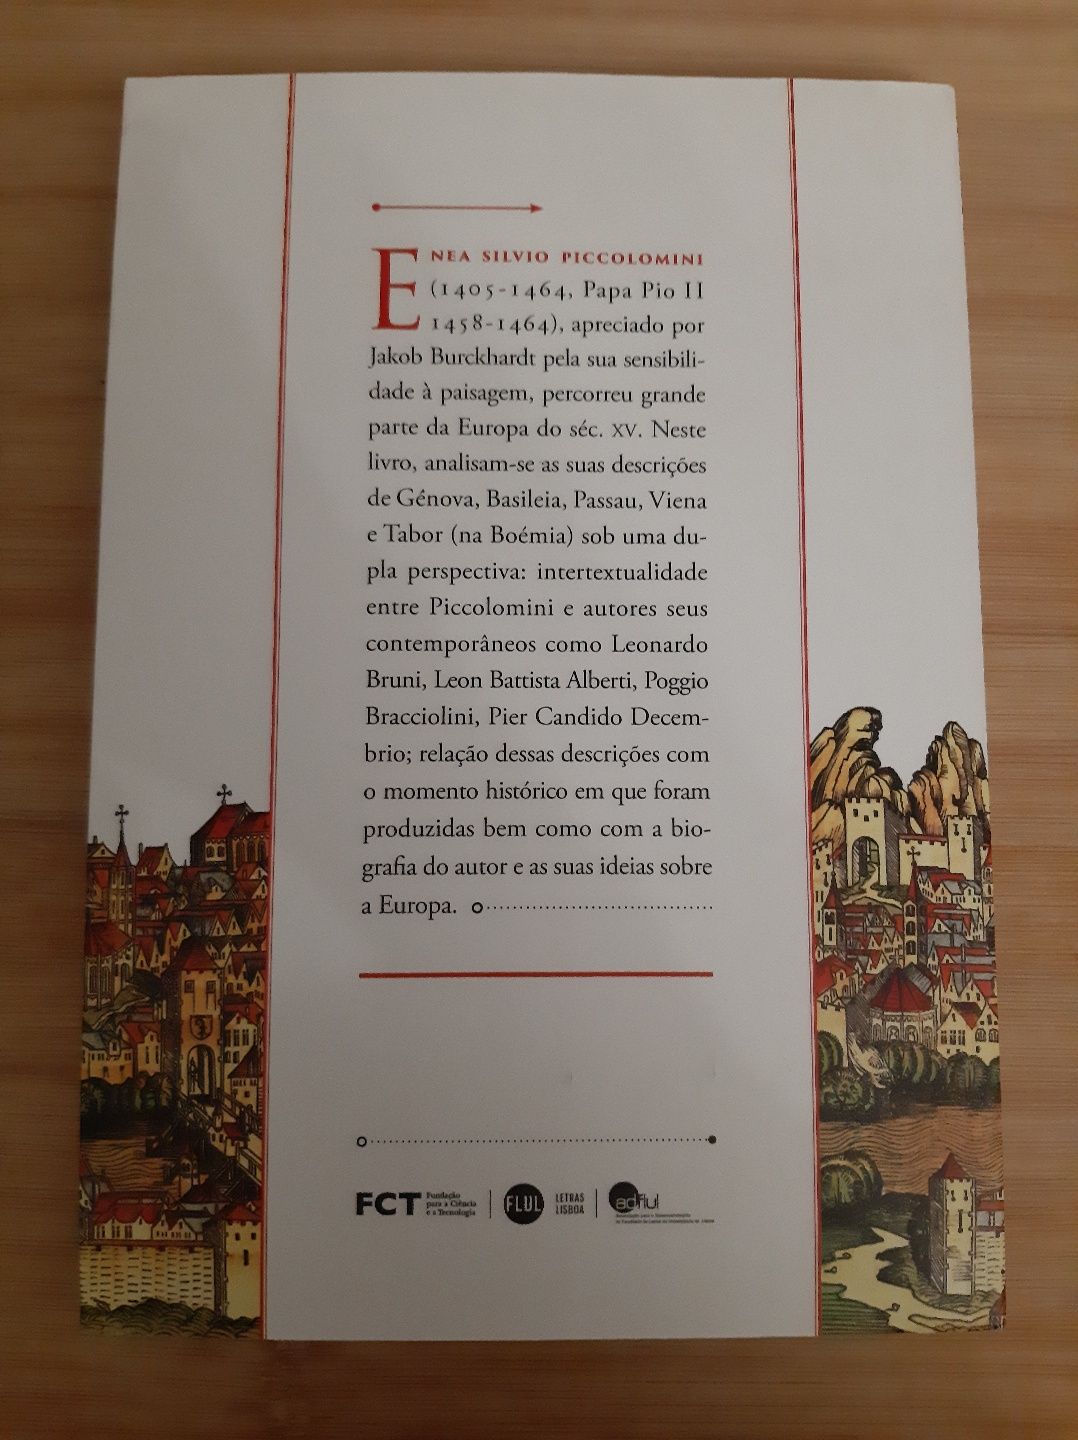 Livro "Cidades Europeias " de Armando Senra Martins